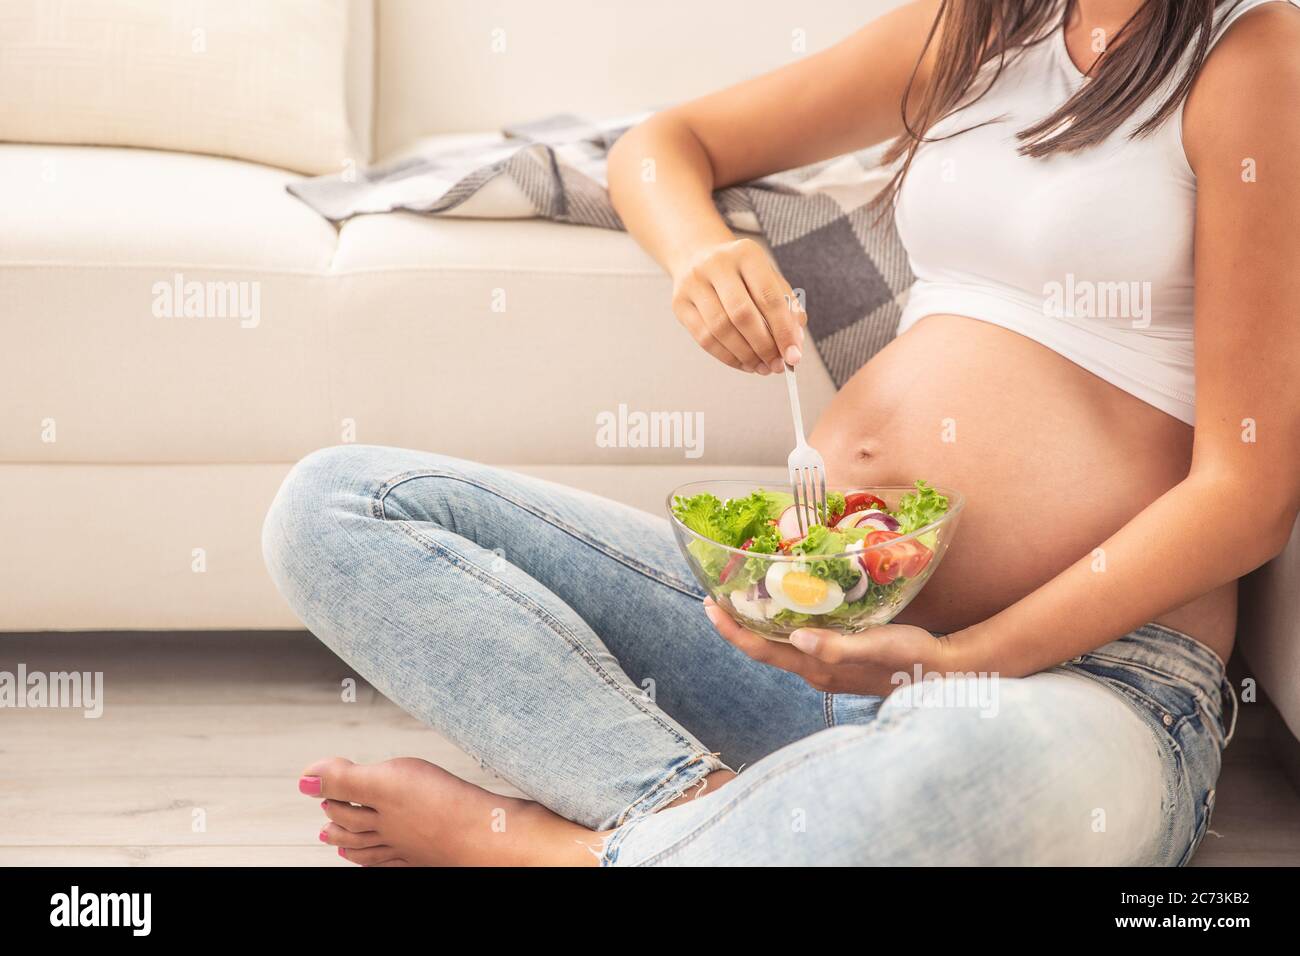 Donna che si aspetta un bambino mangia insalata da una ciotola di vetro seduta sul pavimento di un appartamento. Foto Stock